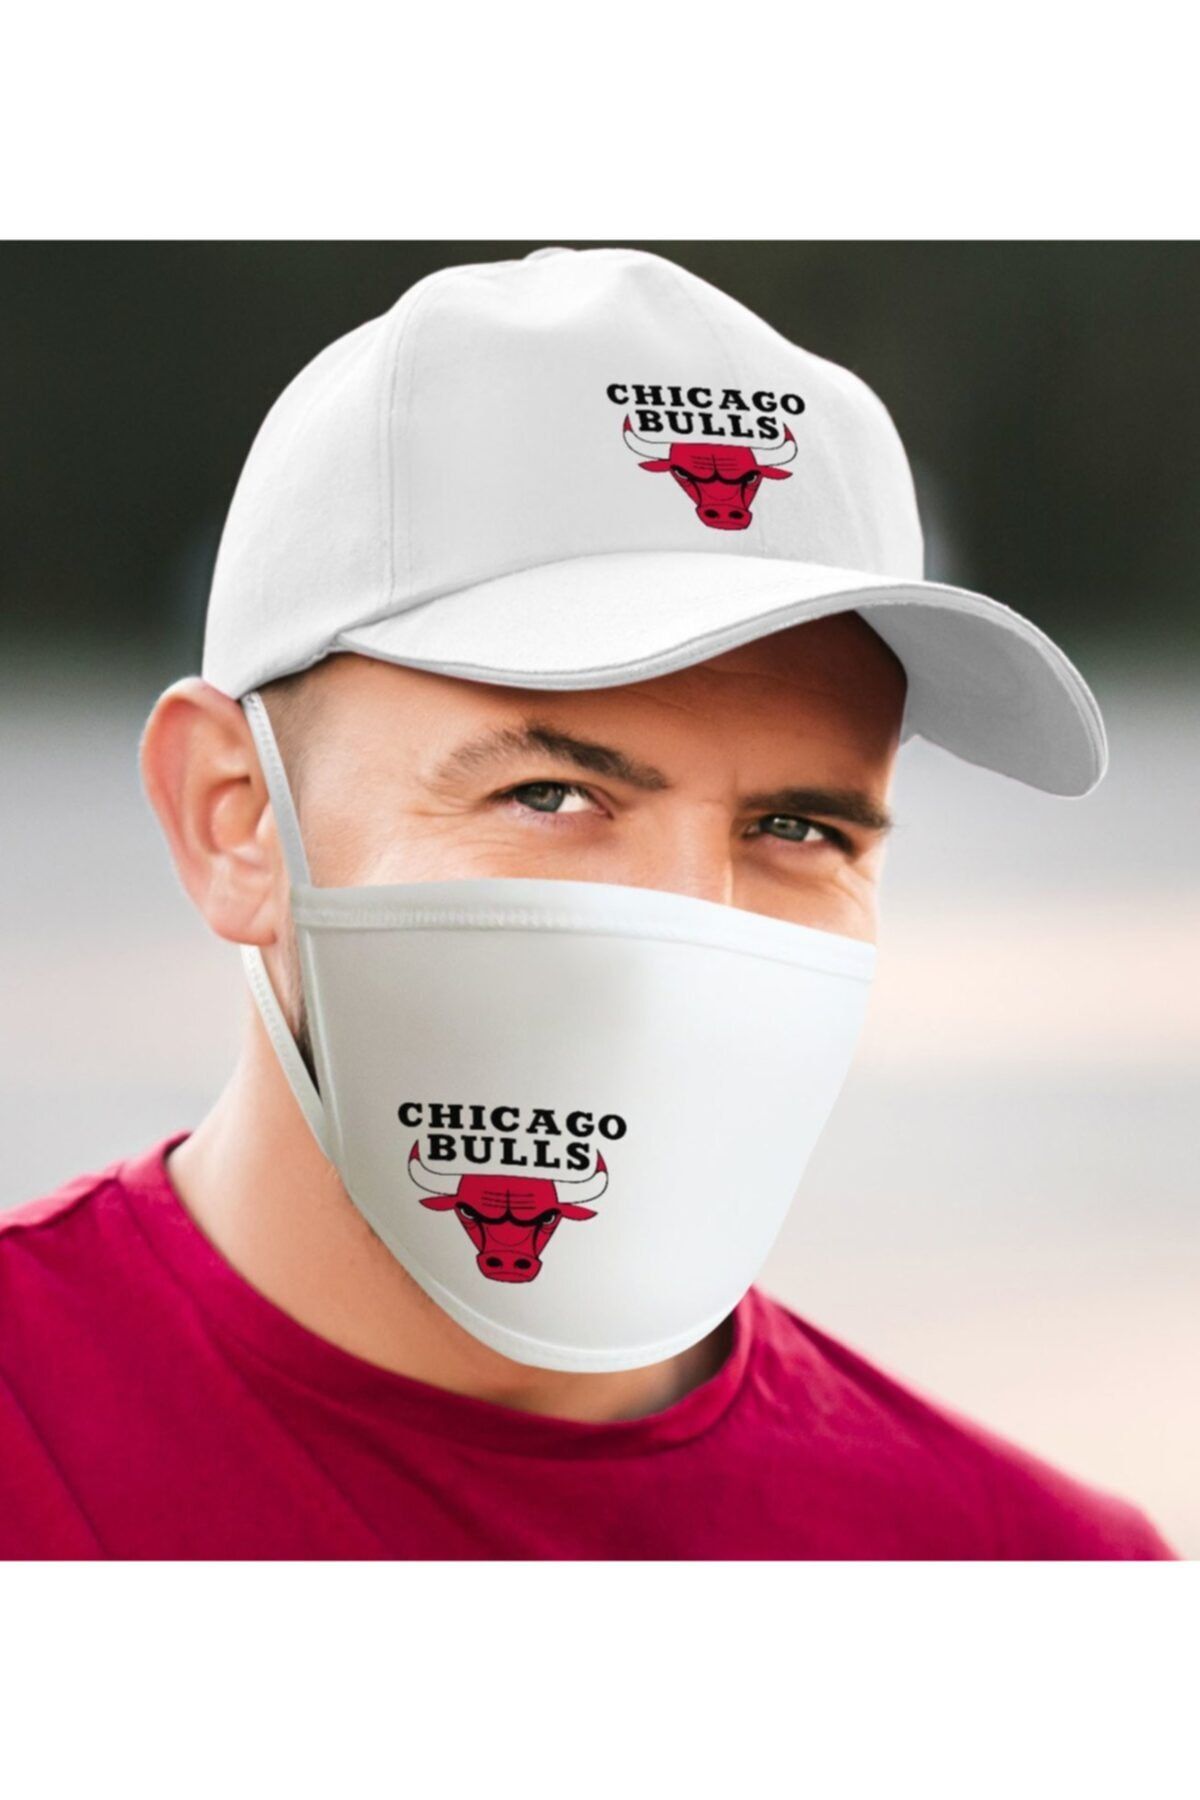 BK Nba Chicago Bulls Beyaz Şapka Ve Yıkanabilir Maske Seti